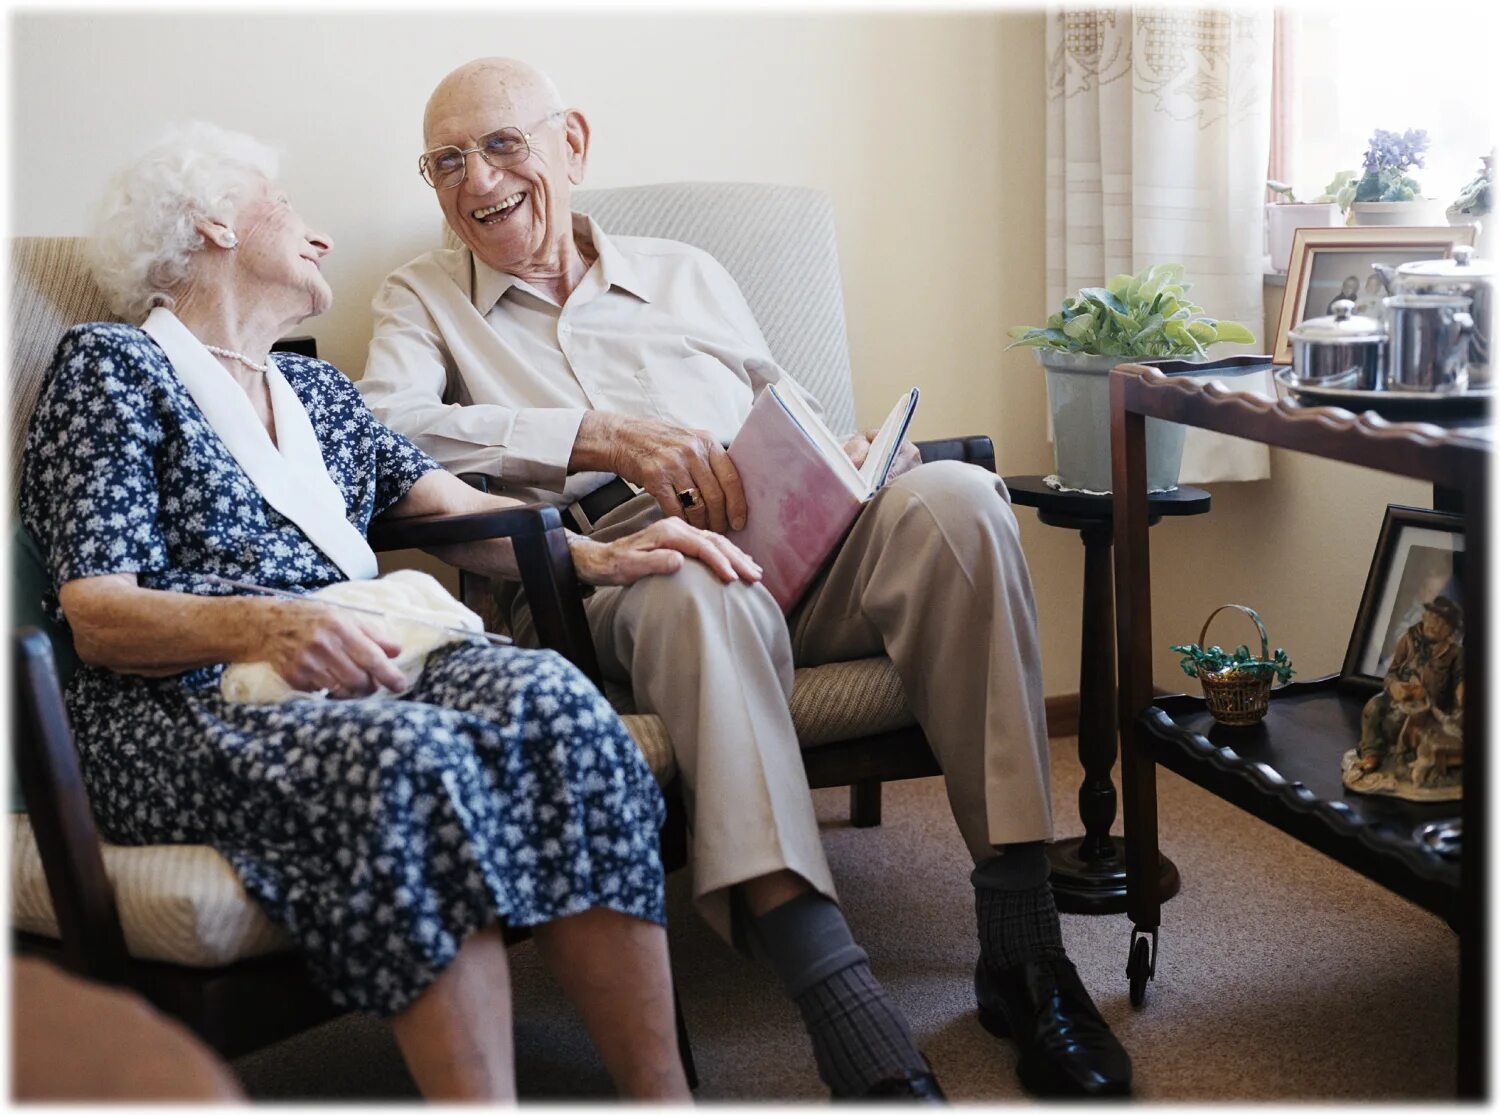 S s пожилые люди. Пожилые люди. Пенсионеры дома. Пенсионеры в доме престарелых. Дом престарелых счастливые старики.